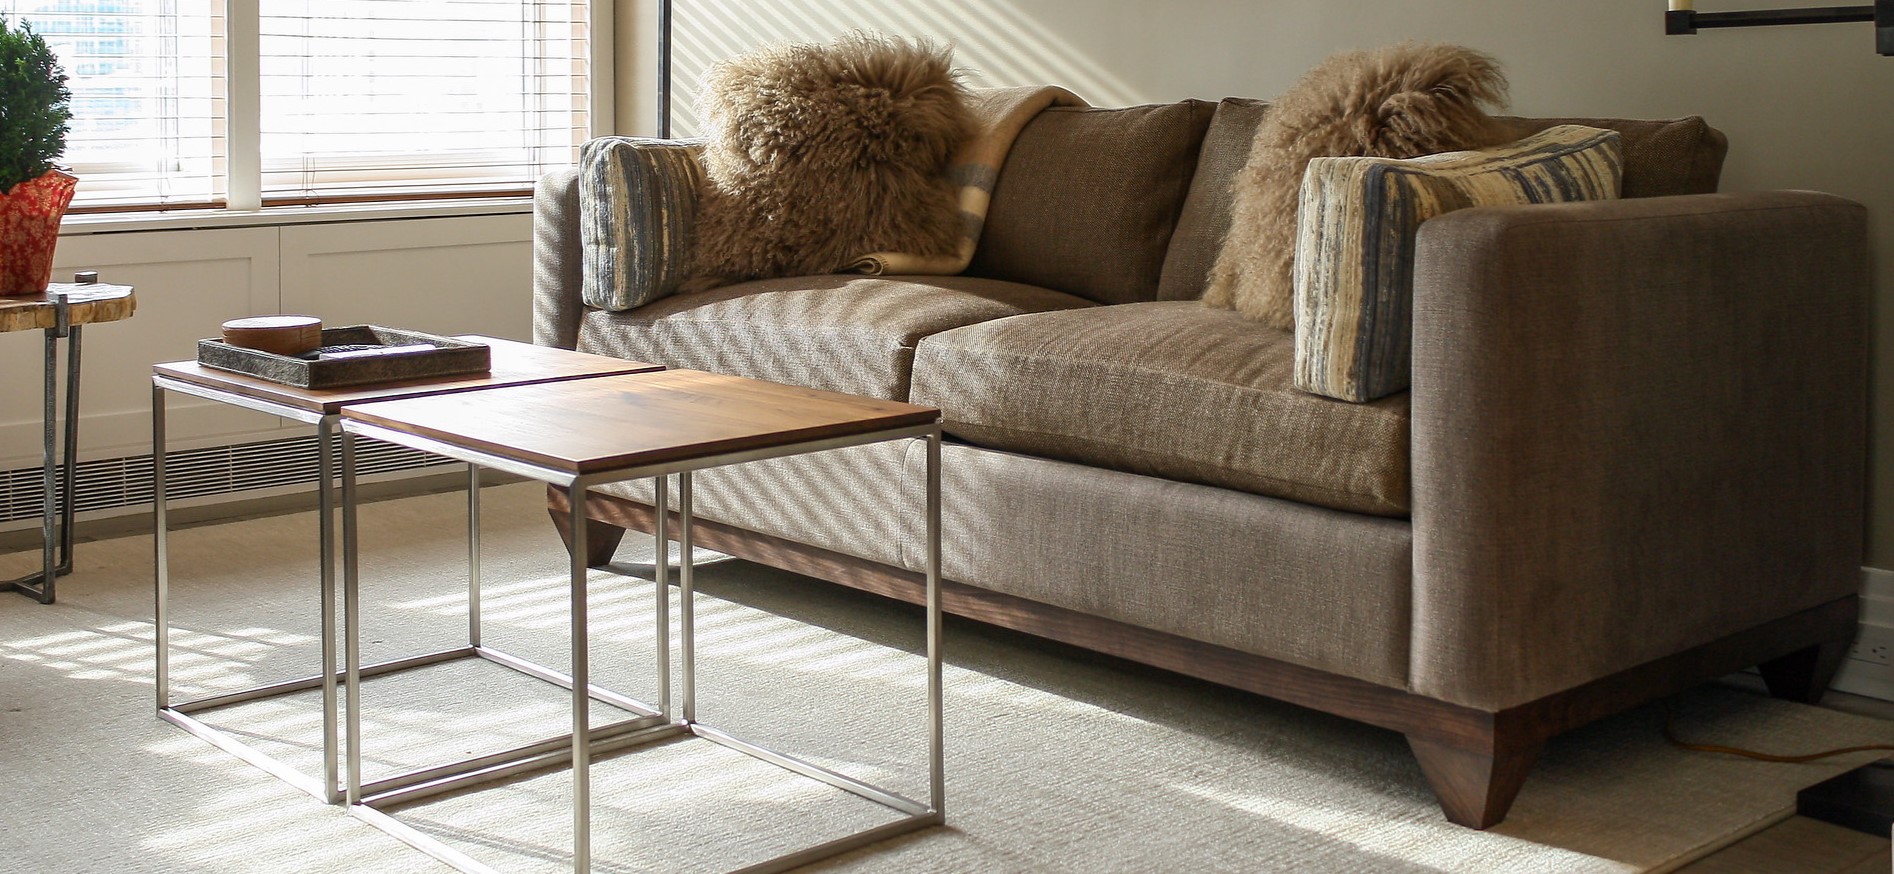 Коричневый диван подойдет для современного интерьера гостиной